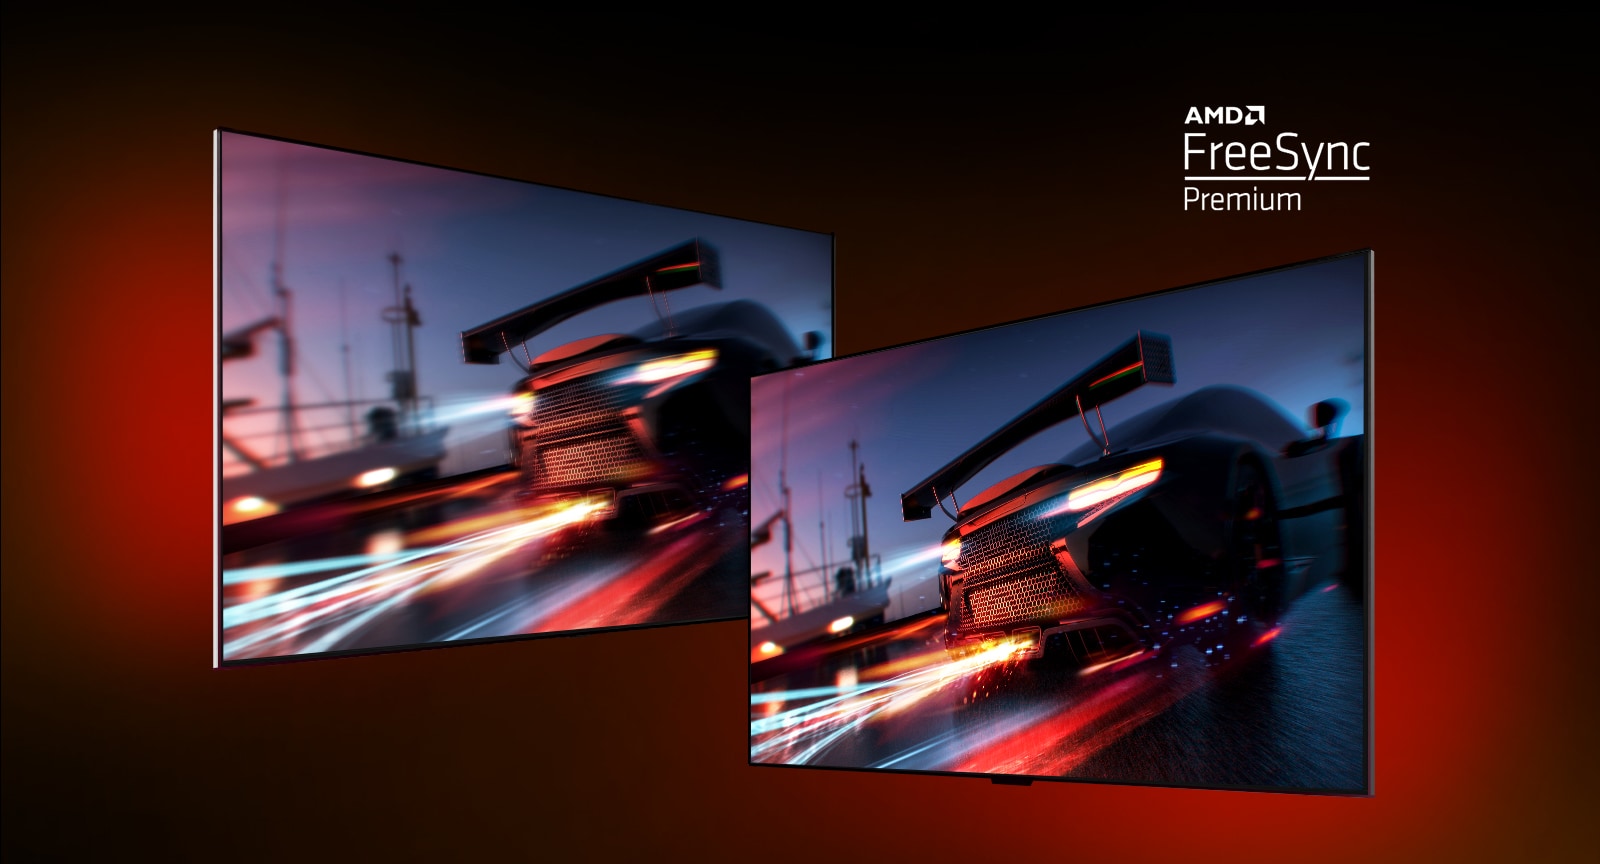 Có hai TV - bên trái cho thấy một cảnh trò chơi FORTNITE với một chiếc xe đua. Bên phải cũng hiển thị cùng một cảnh trò chơi nhưng trong một hình ảnh hiển thị sáng hơn và rõ ràng hơn. Ở góc trên bên phải hiển thị logo AMD FreeSync Premium.  